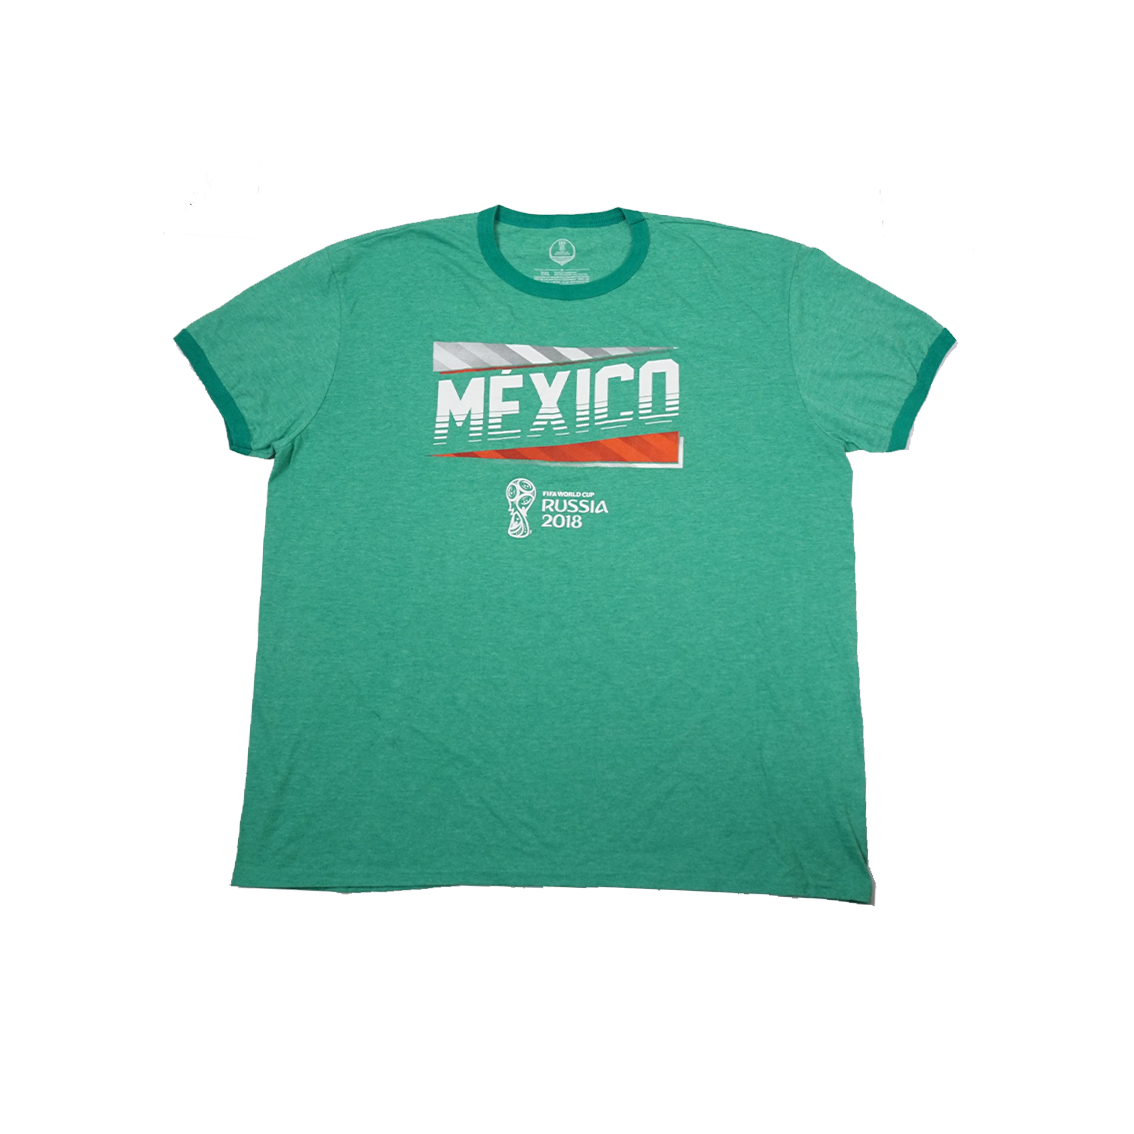 Mexico FIFA 2018 Tshirt